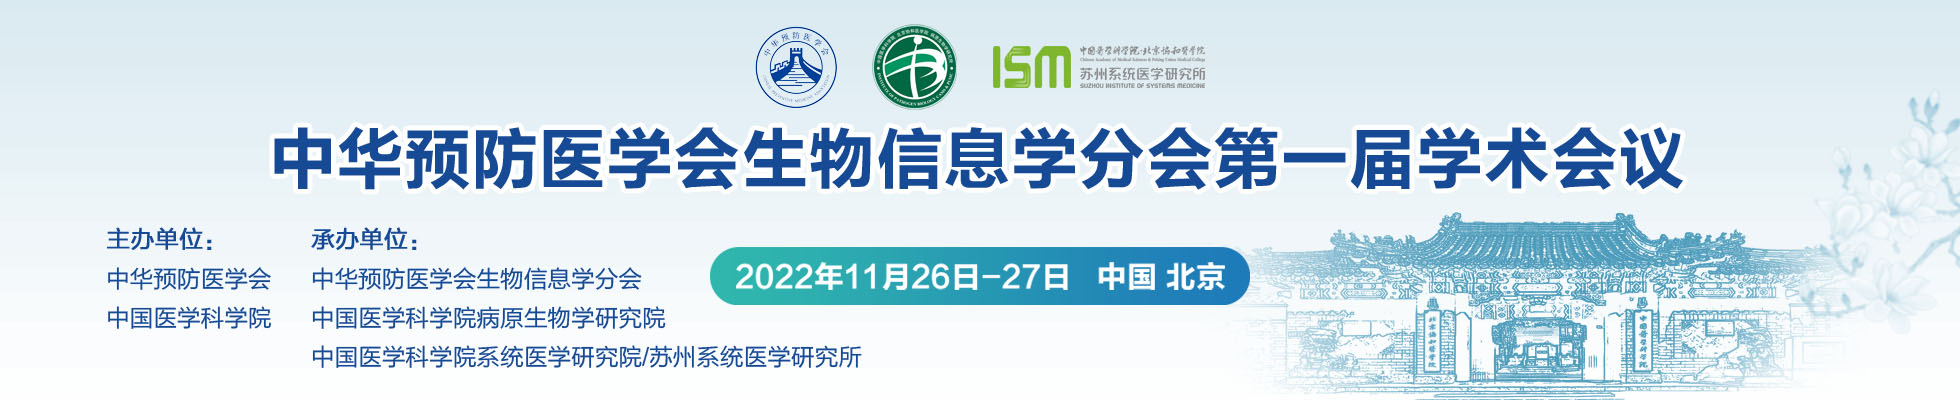 中华预防医学会生物信息学分会第一届学术会议